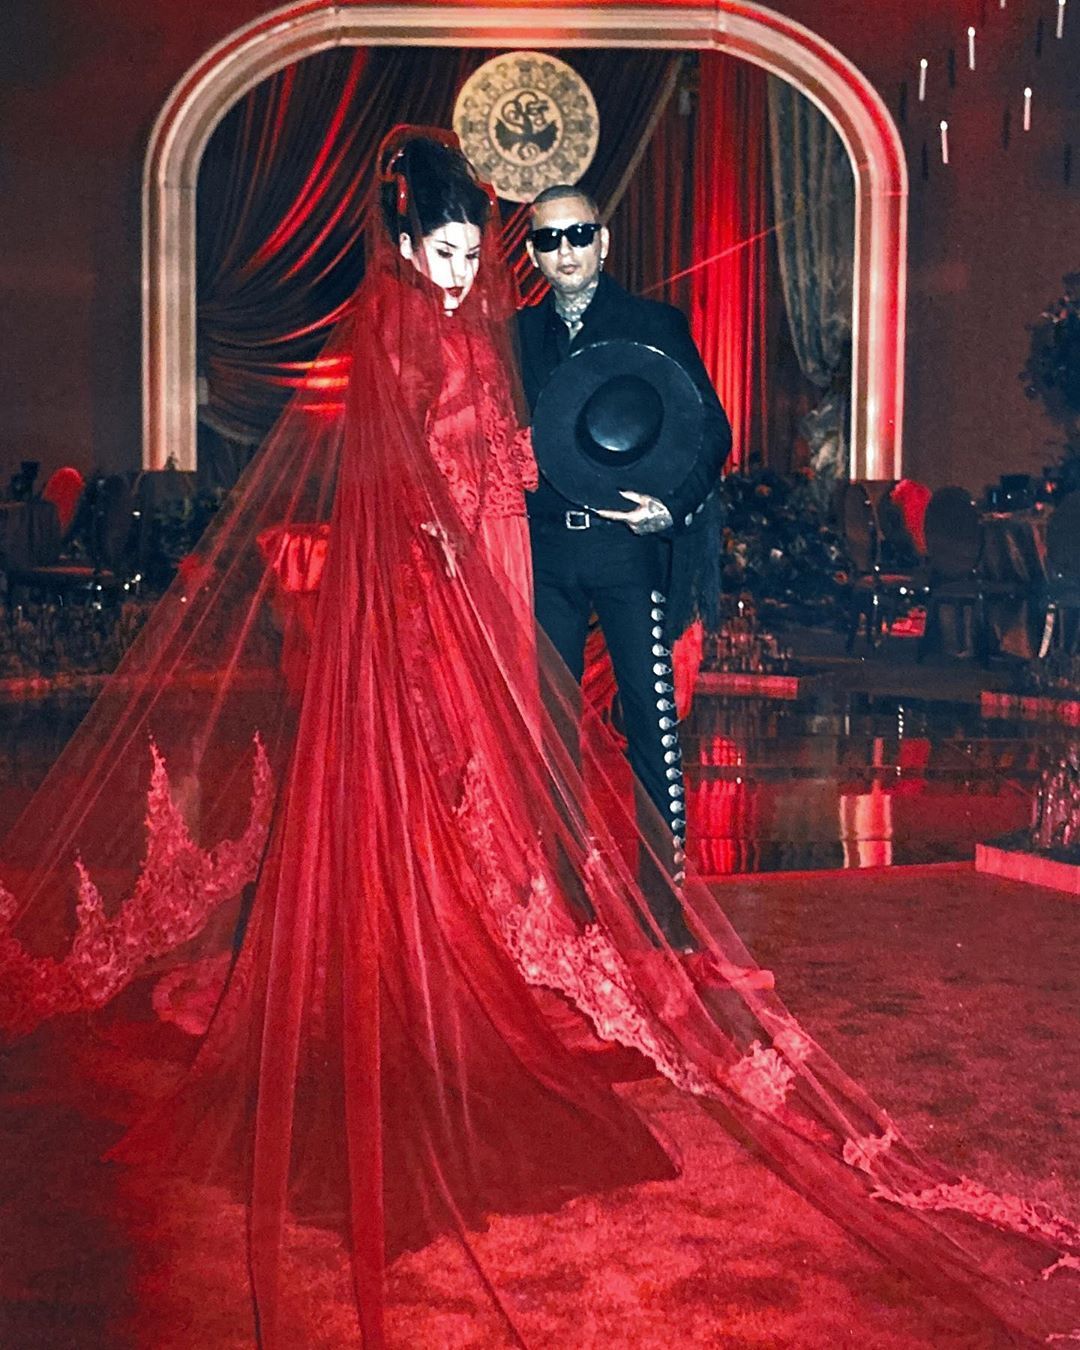 Kat Von D marries Rafael Reyes in a red Kat Von D's Red Wedding Dress....